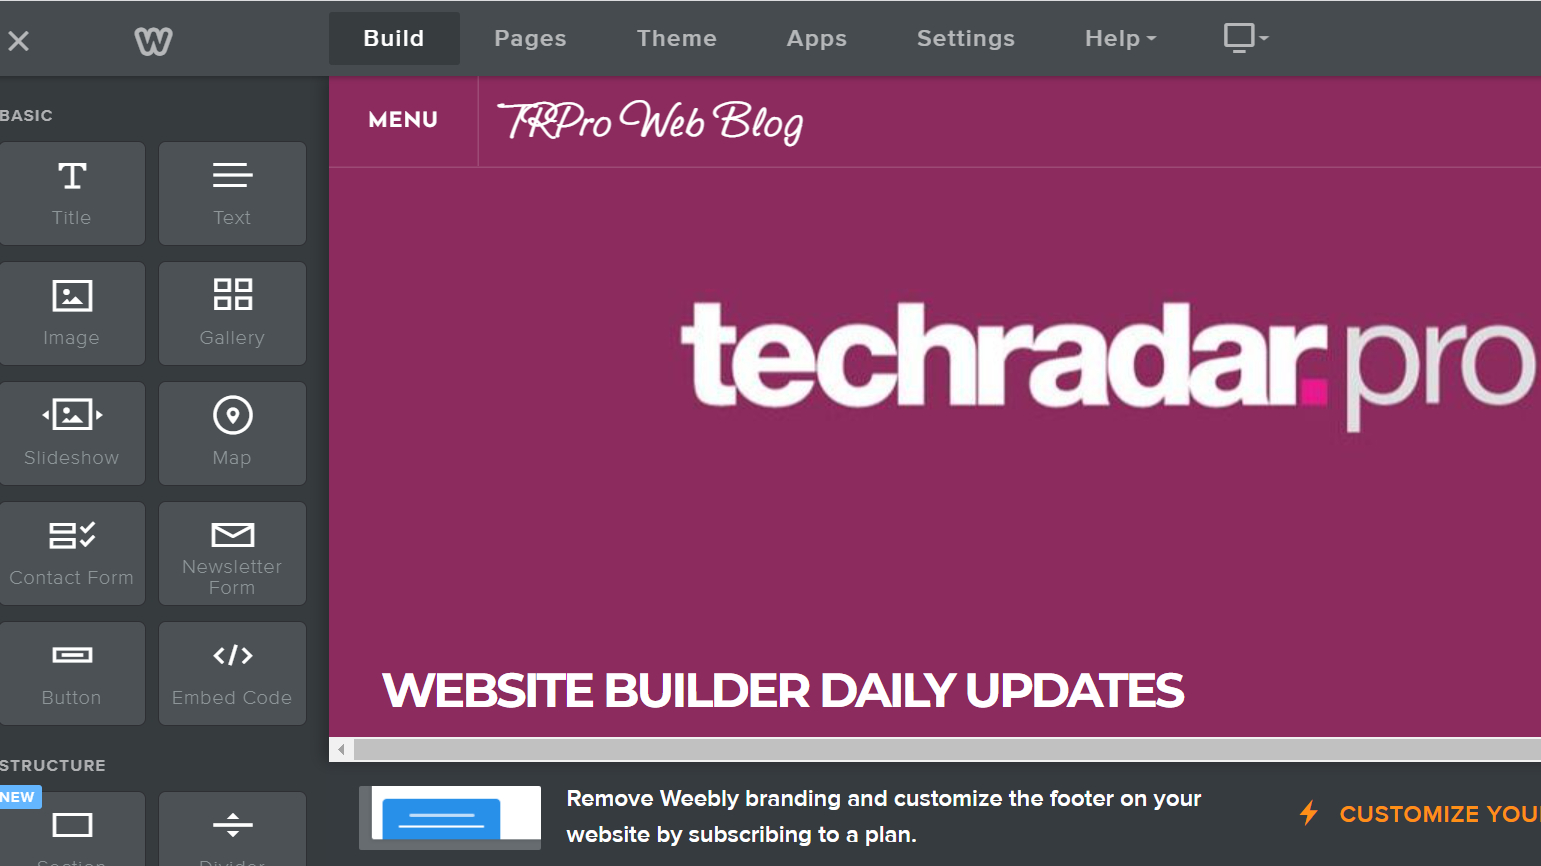 A снимок экрана блога TechRadar Pro, созданного с помощью конструктора веб-сайтов Weebly